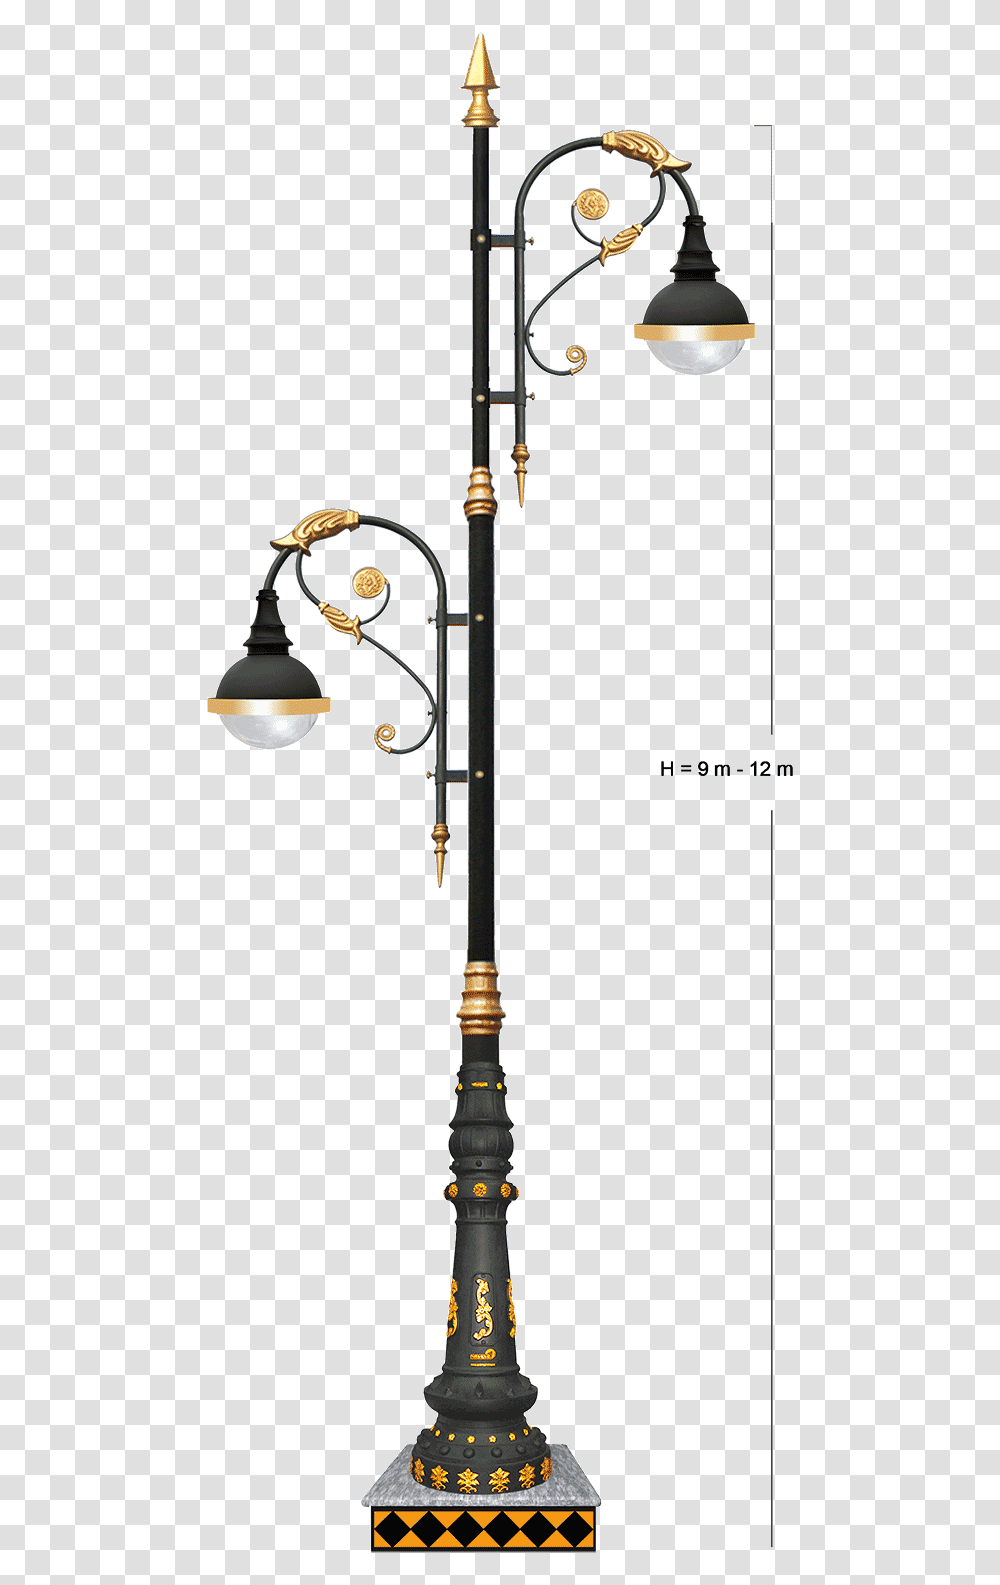 Decoration Light, Lamp, Lamp Post, Shower Faucet, Coat Rack Transparent Png